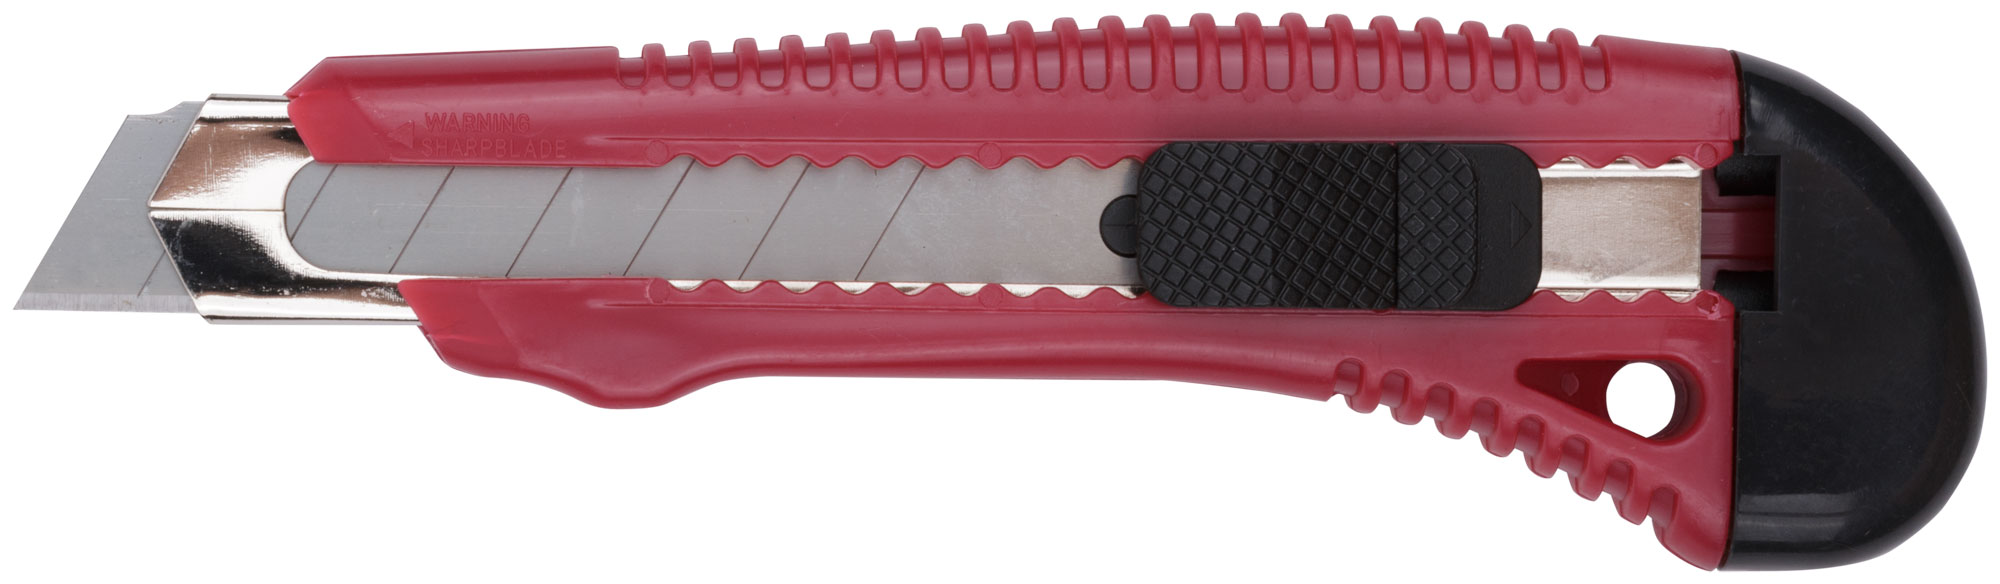 Нож технический Курс 10168, 18 мм, усиленный, серия 